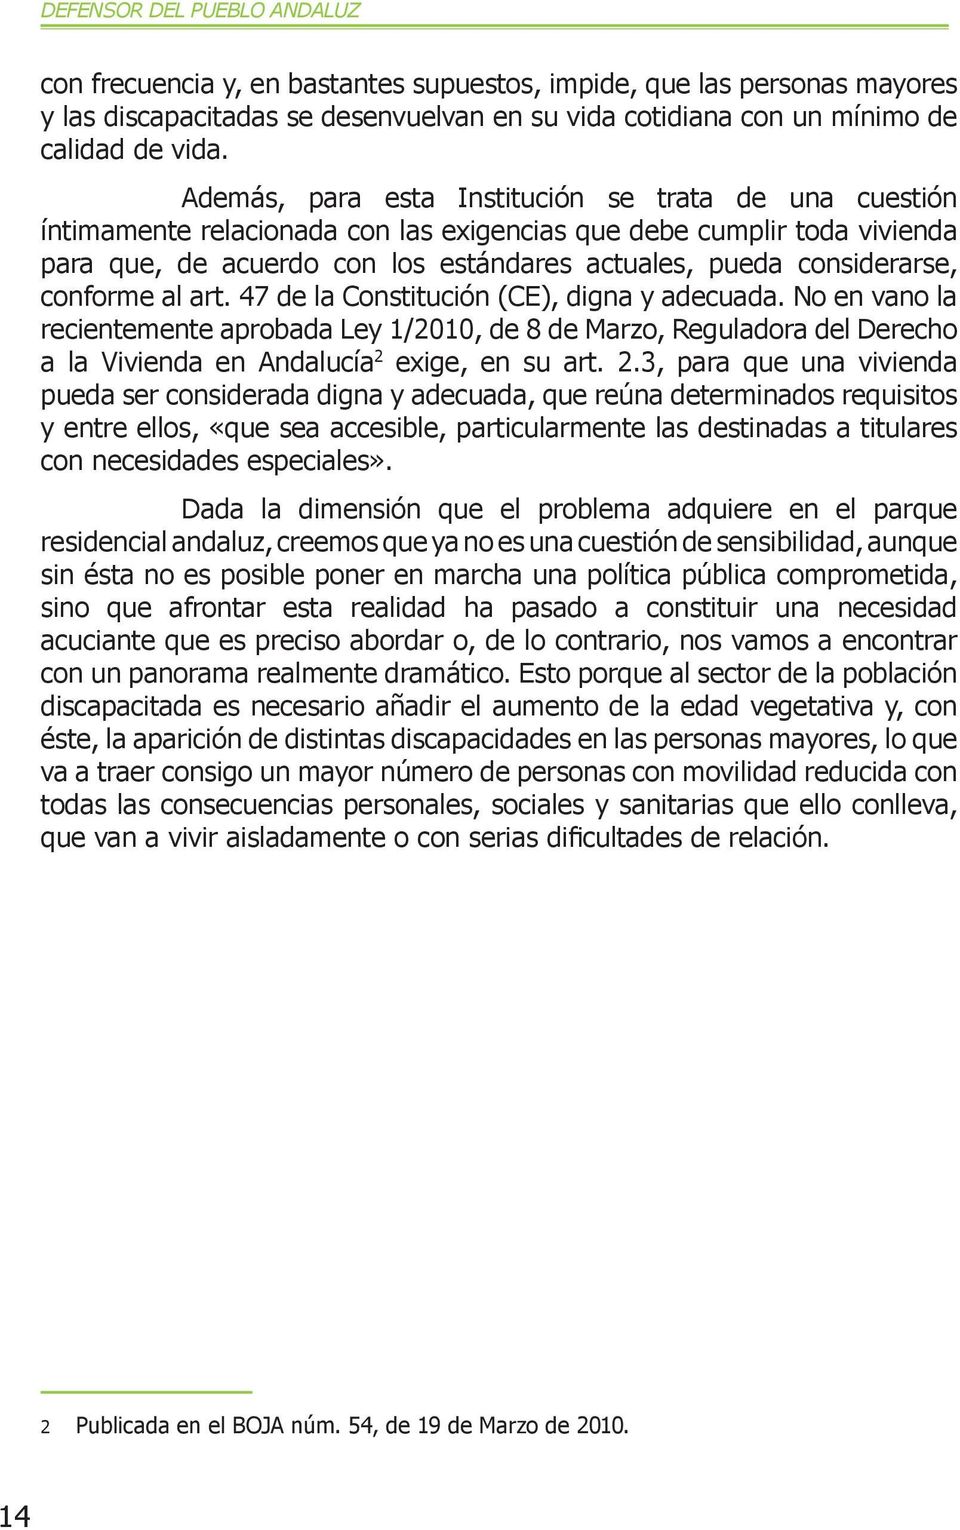 conforme al art. 47 de la Constitución (CE), digna y adecuada. No en vano la recientemente aprobada Ley 1/2010, de 8 de Marzo, Reguladora del Derecho a la Vivienda en Andalucía 2 